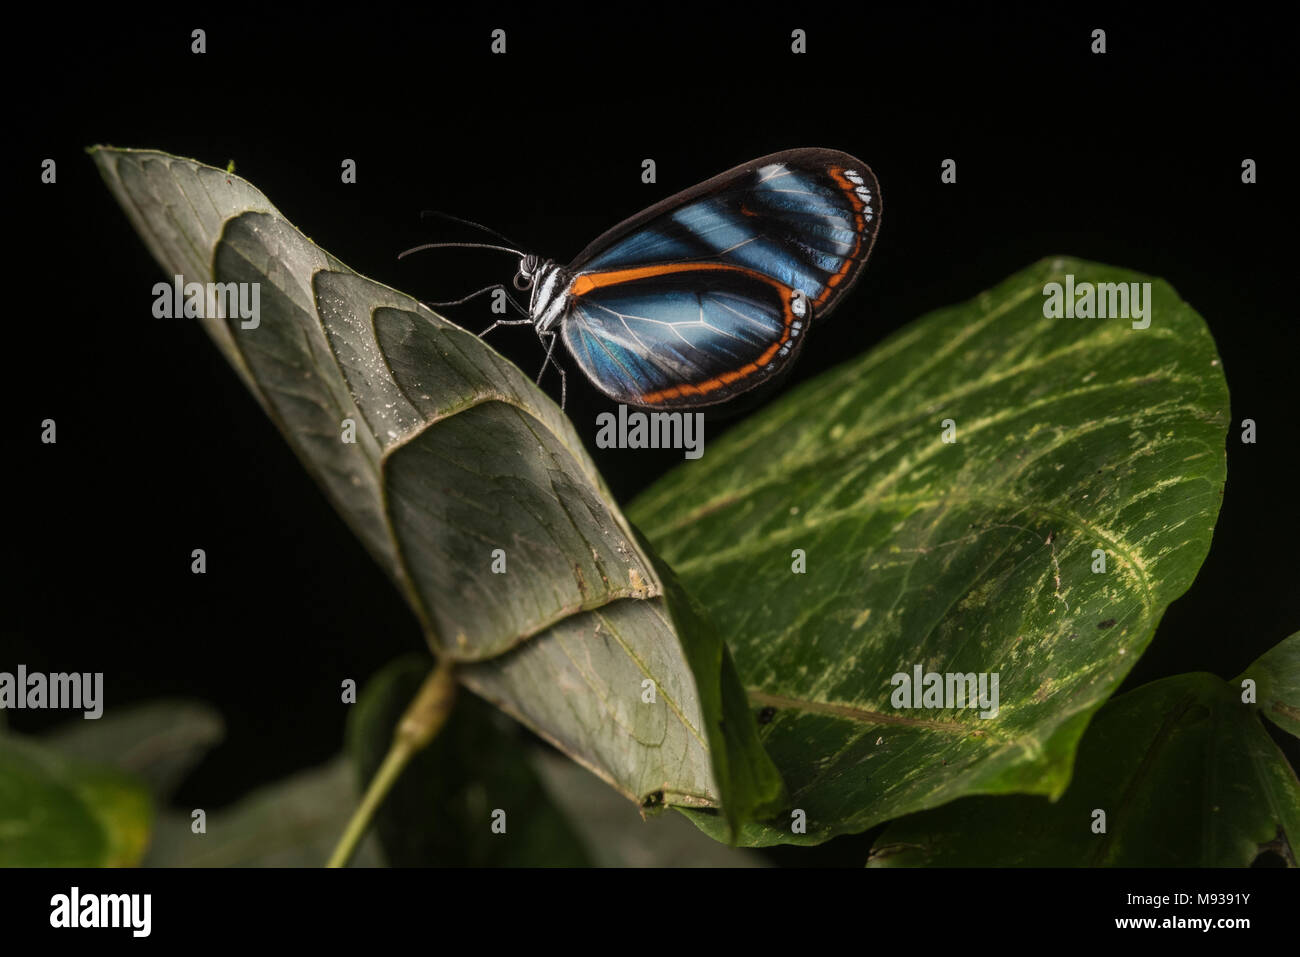 Ein Heliconius Schmetterling aus Peru, diese Arten in einflussreichen mimikry Studien verwendet wurde, Ökologie und Evolution zu verstehen. Stockfoto